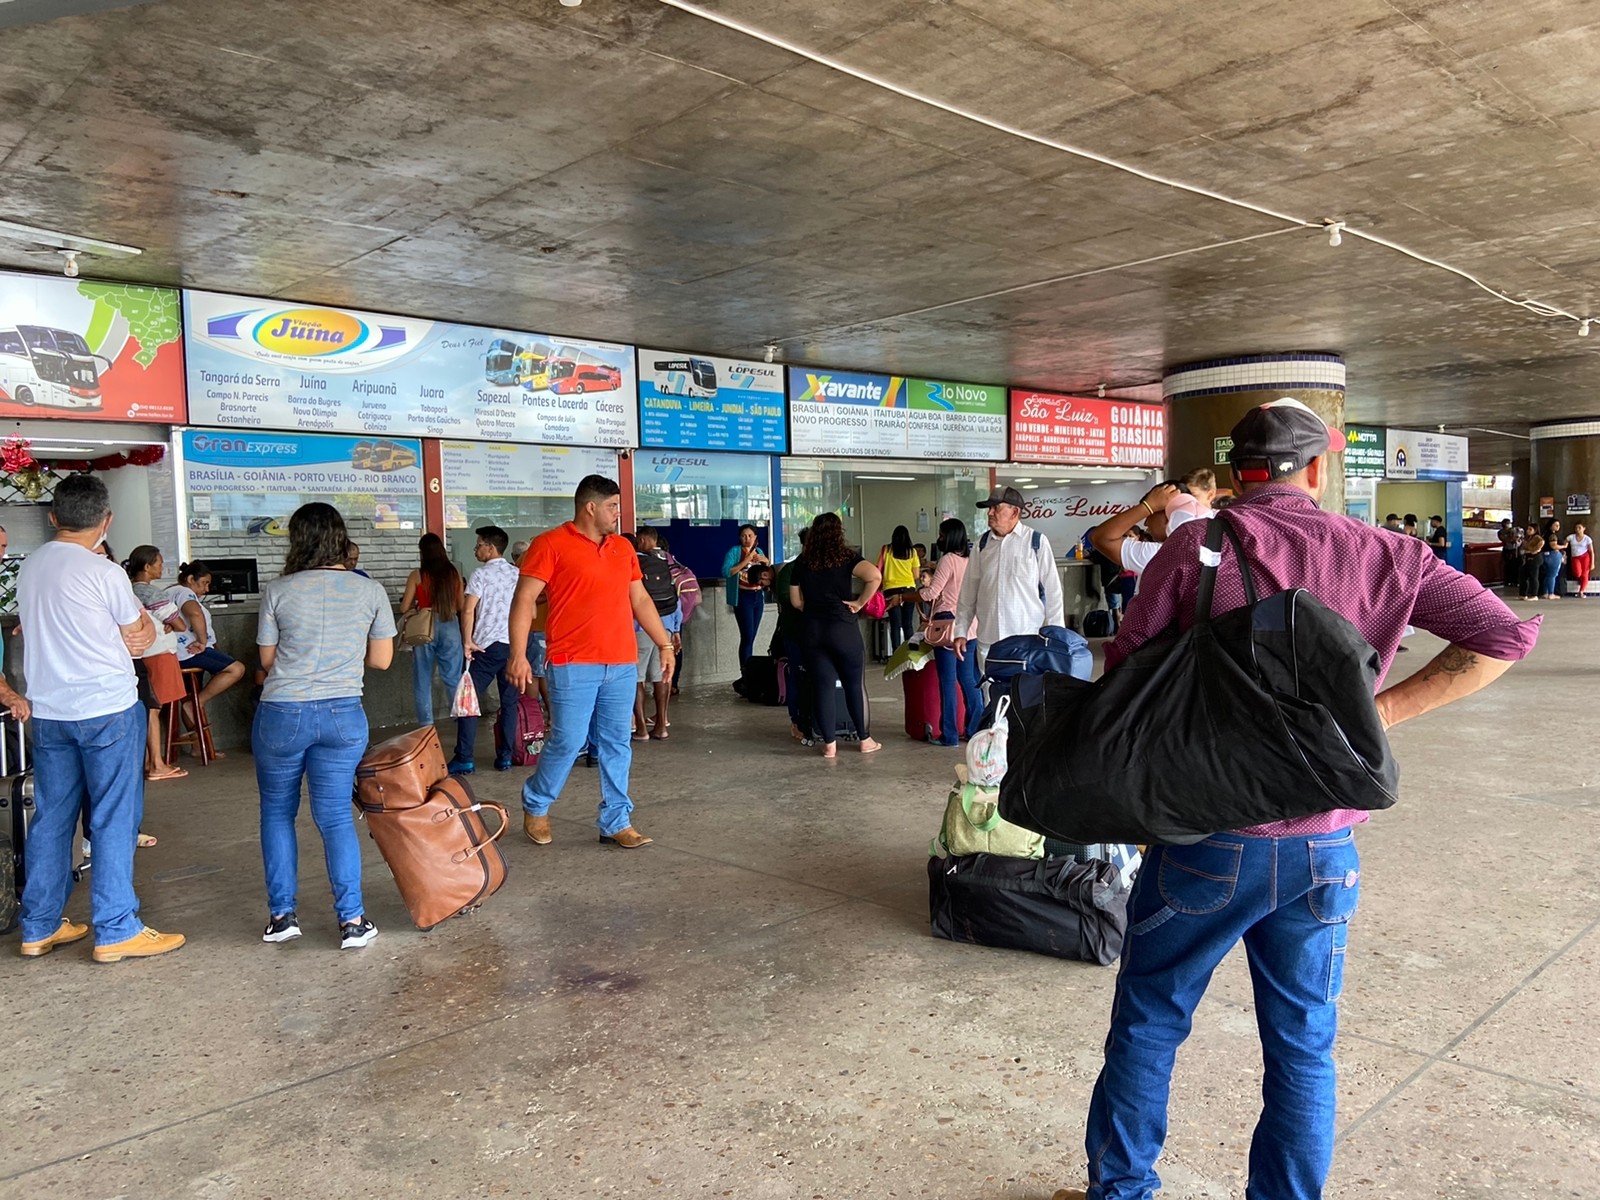 Rodoviária de Cuiabá recebe primeira grande reforma em mais de 40 anos